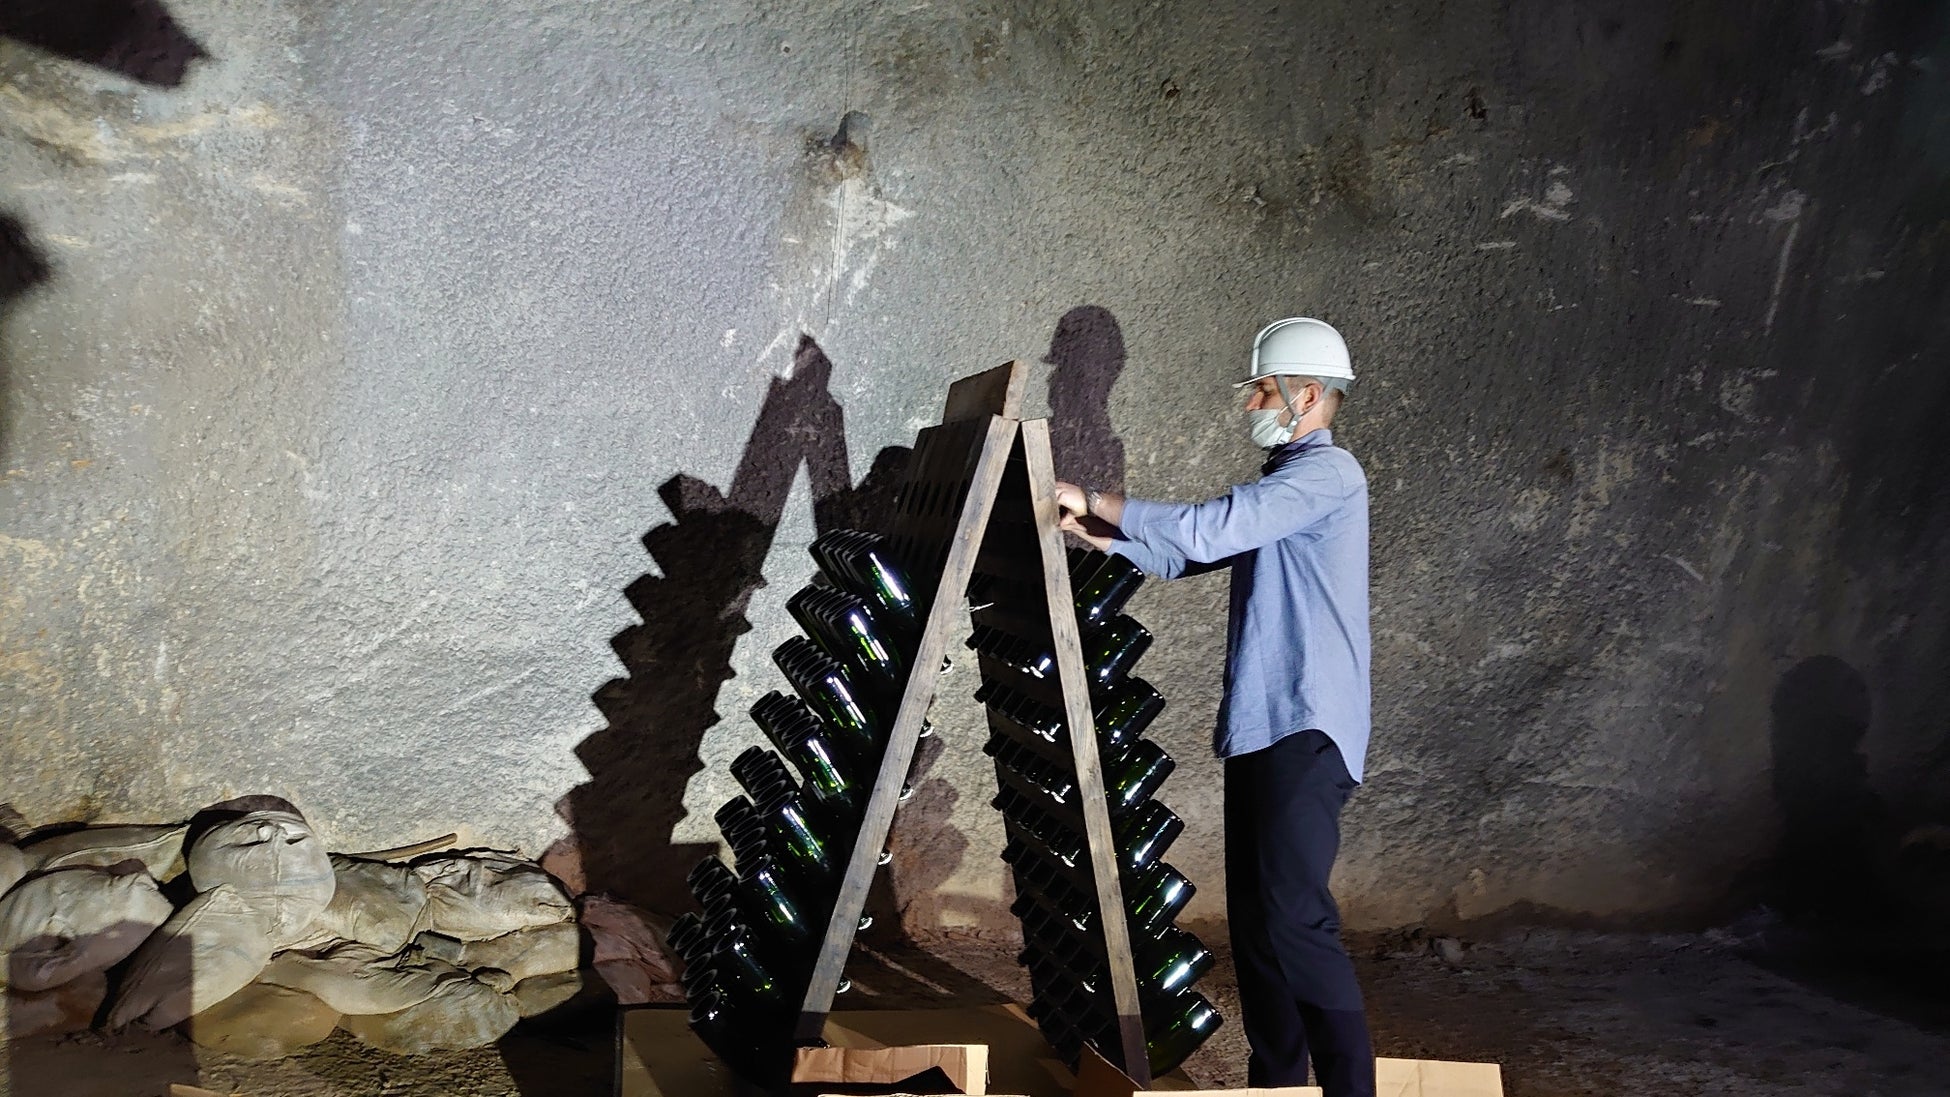 旧生駒トンネル内で「感謝をまとうスパークリングワイン」を熟成している様子